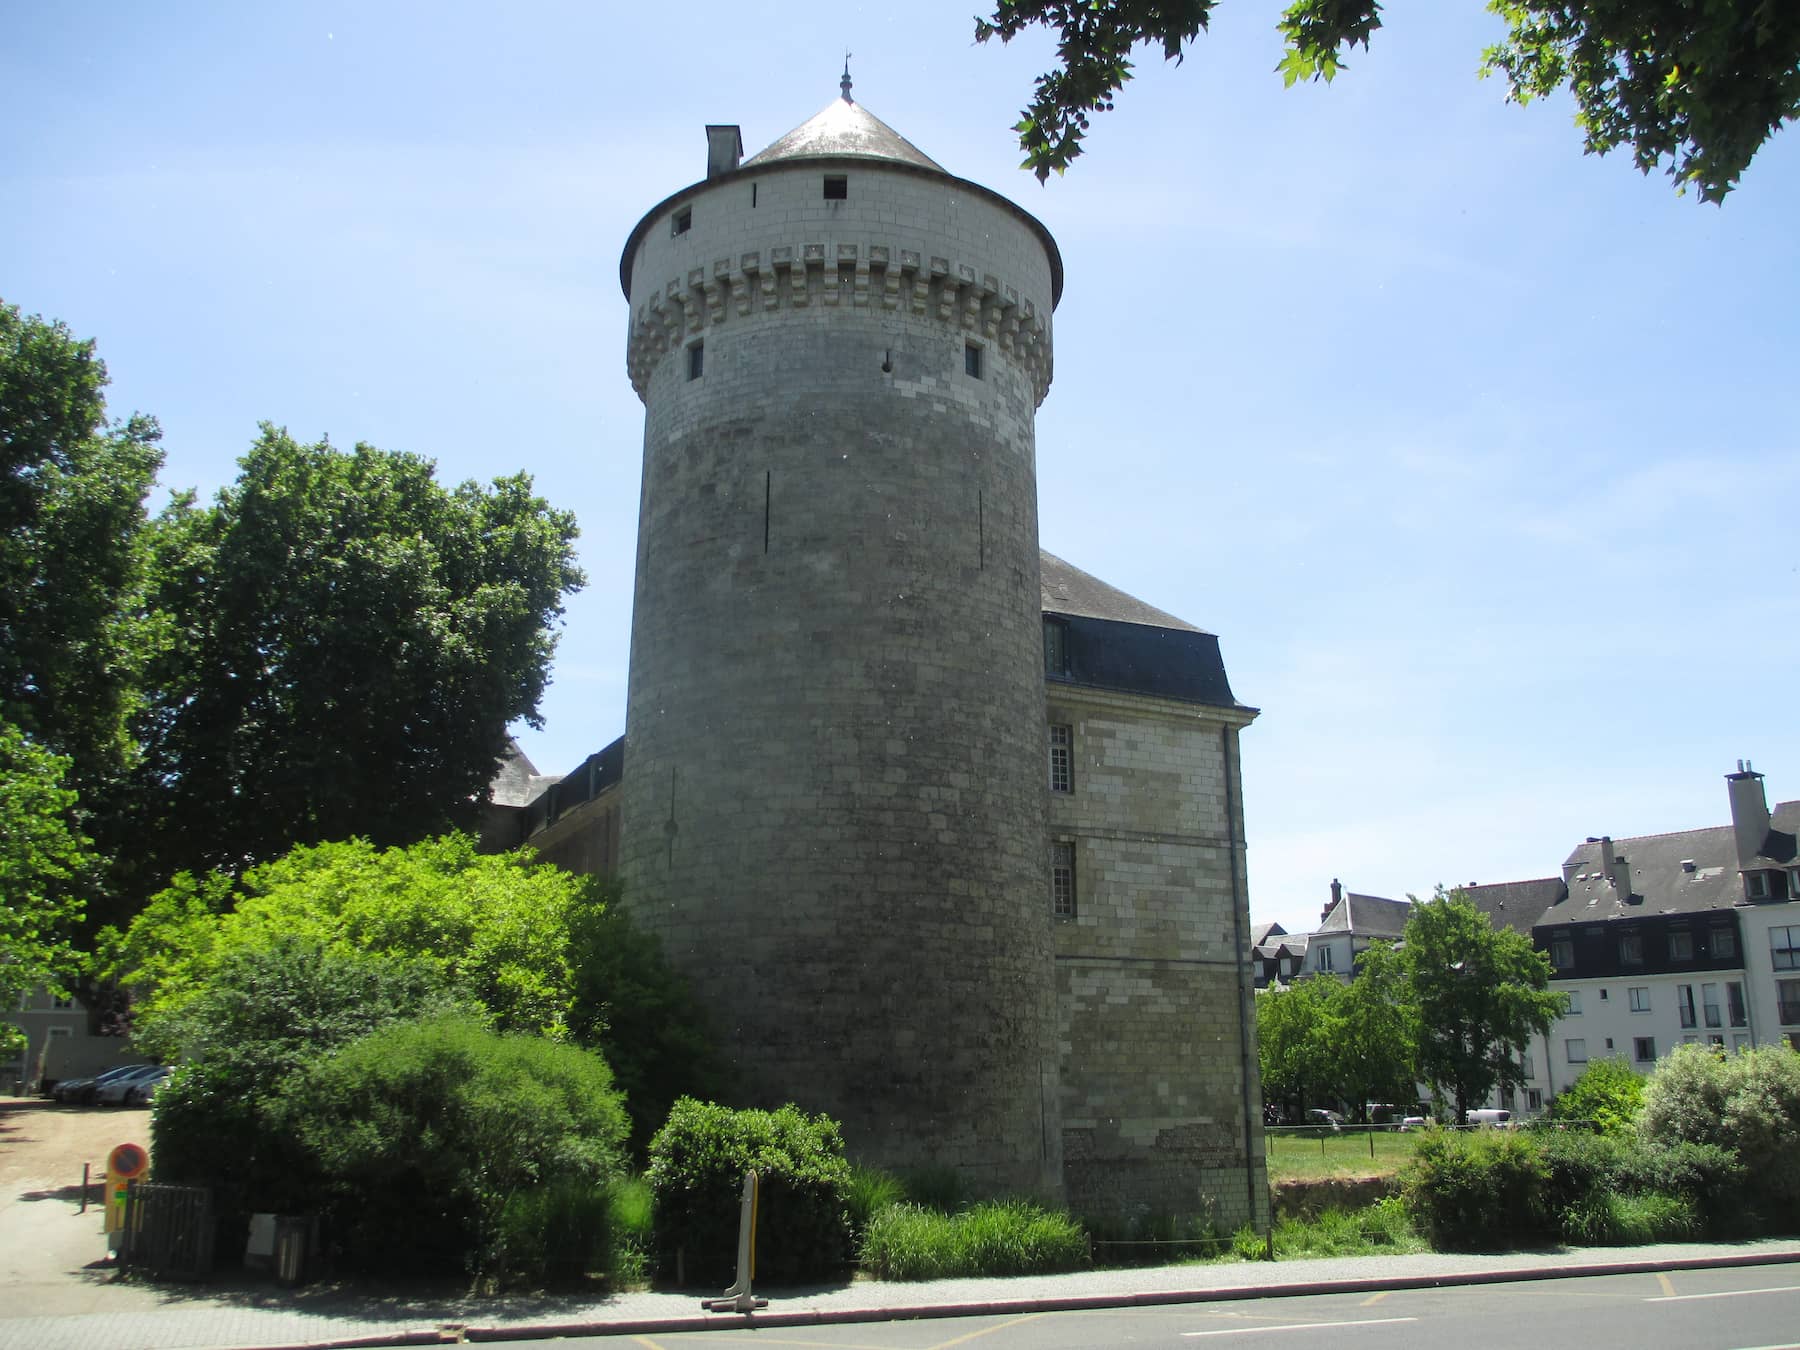 Château de Tours